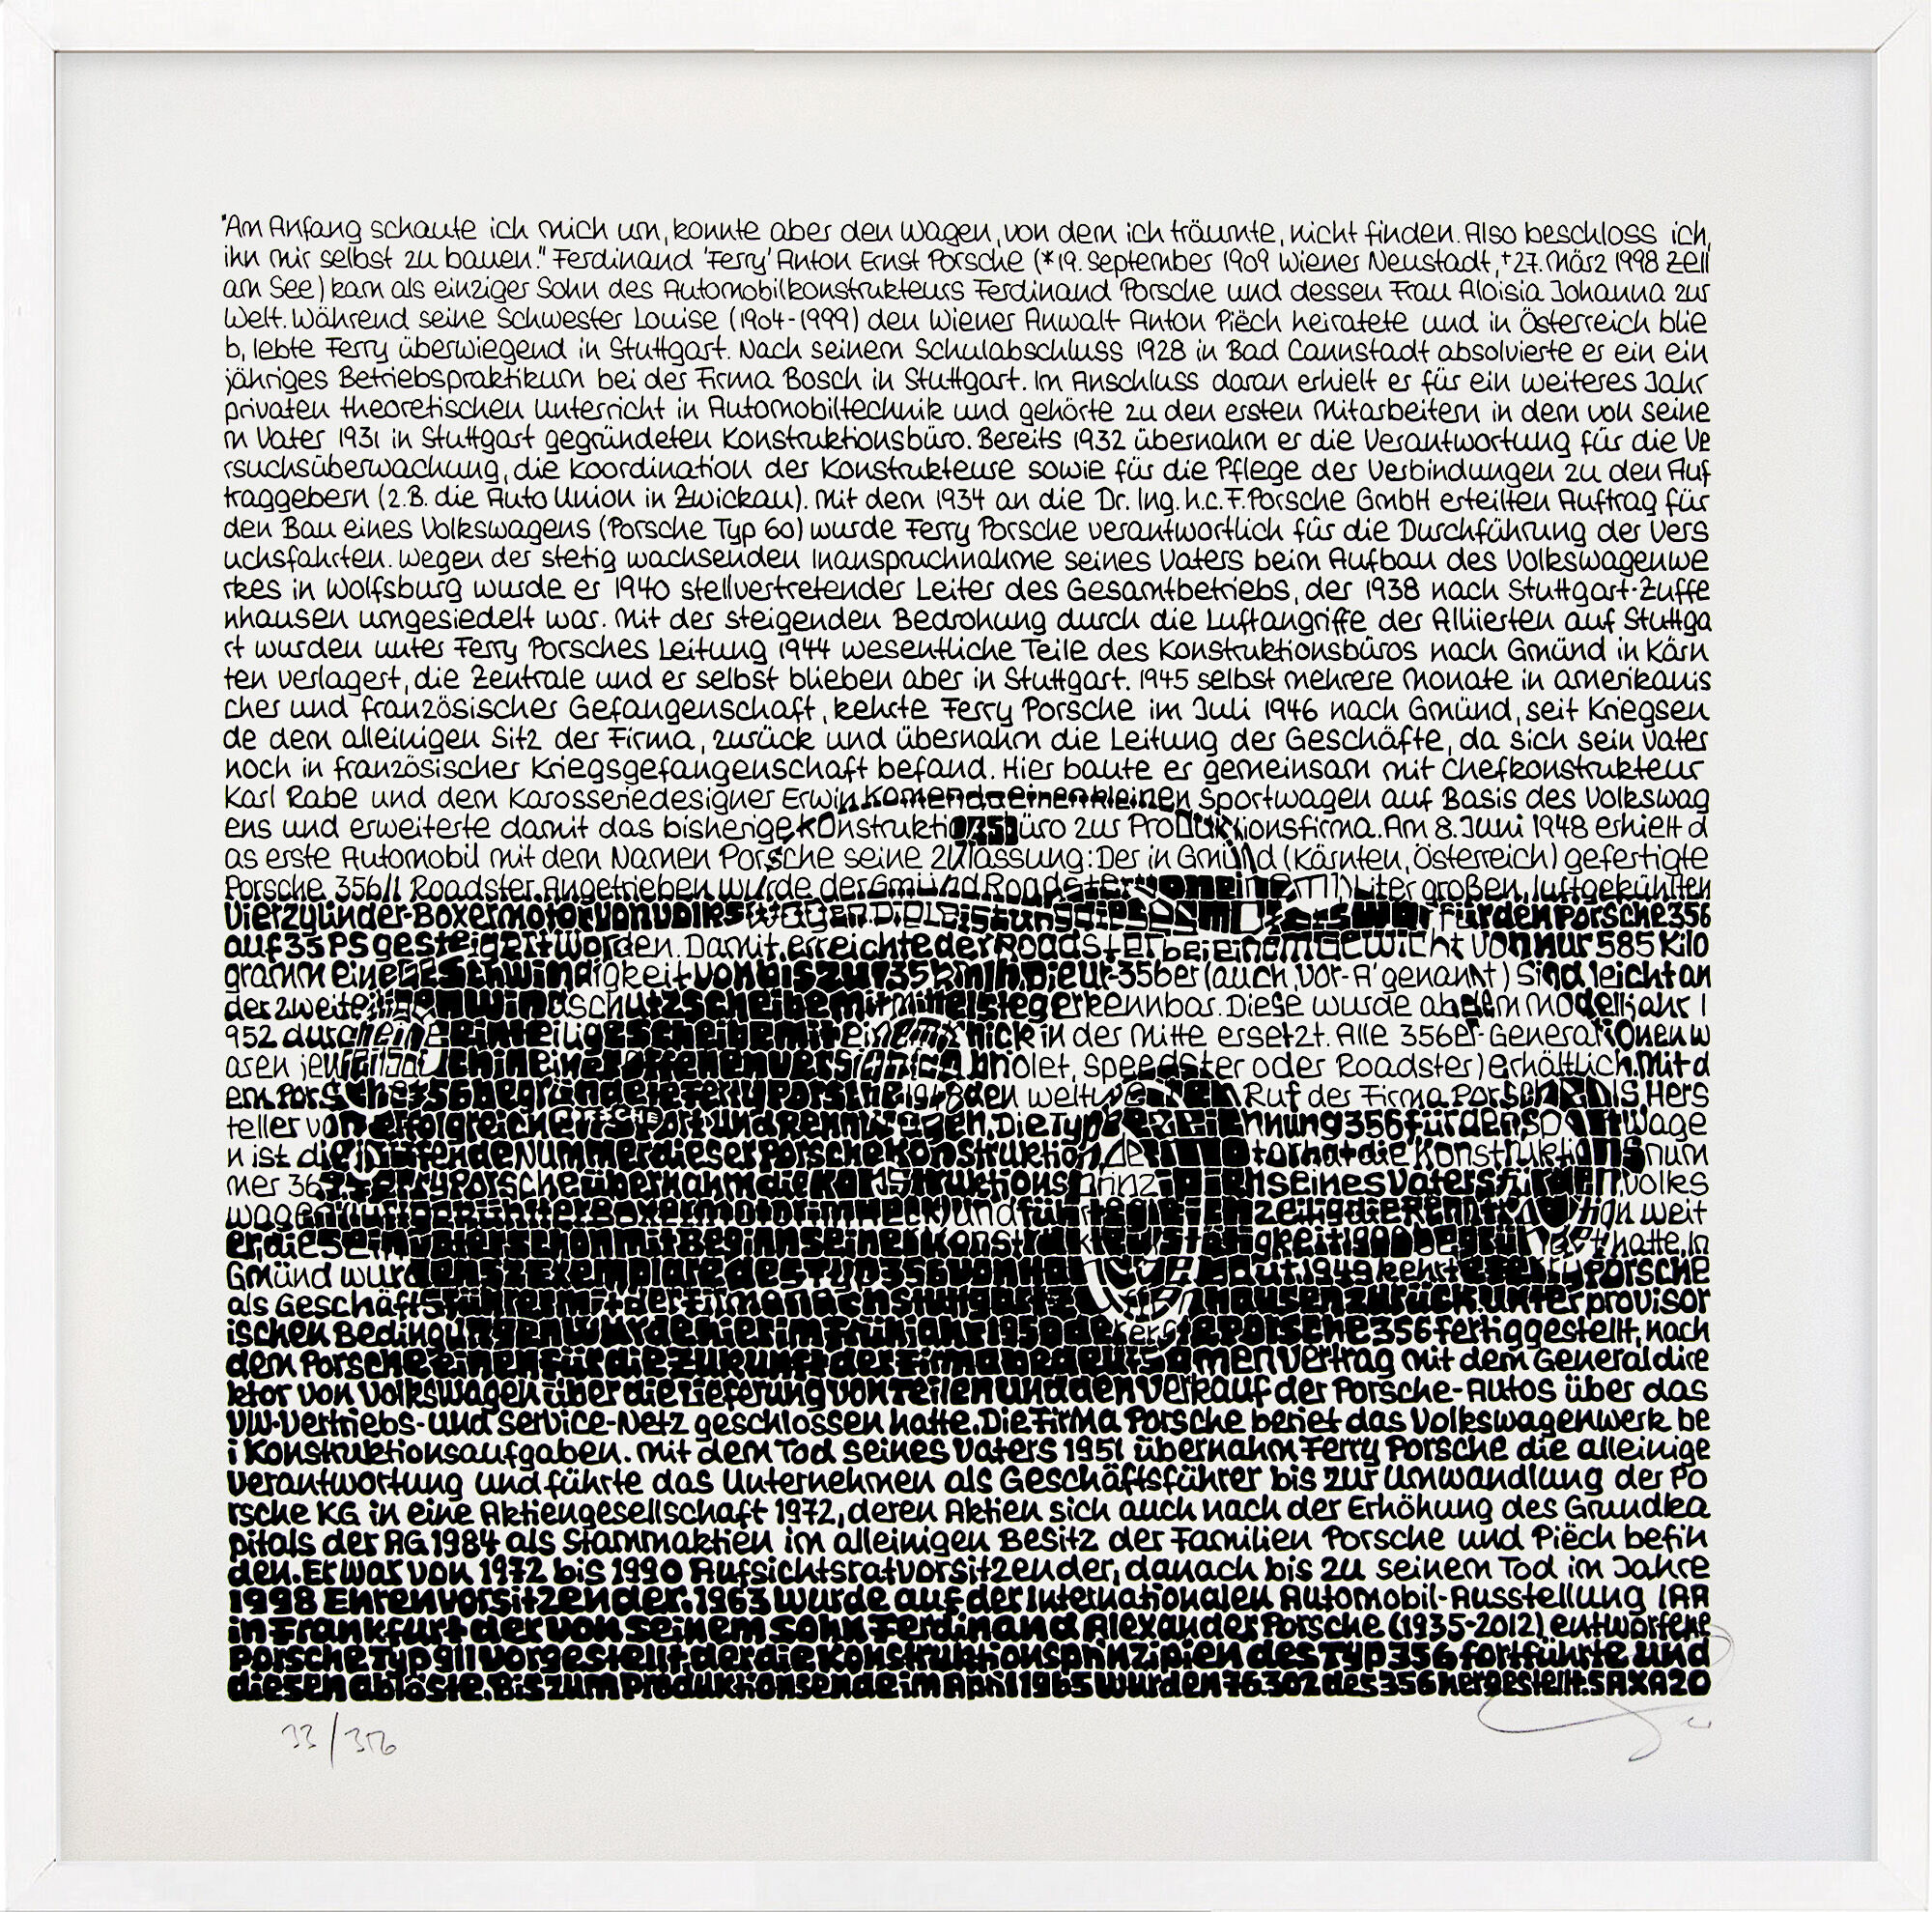 Picture "Porsche 356" (2020) by SAXA